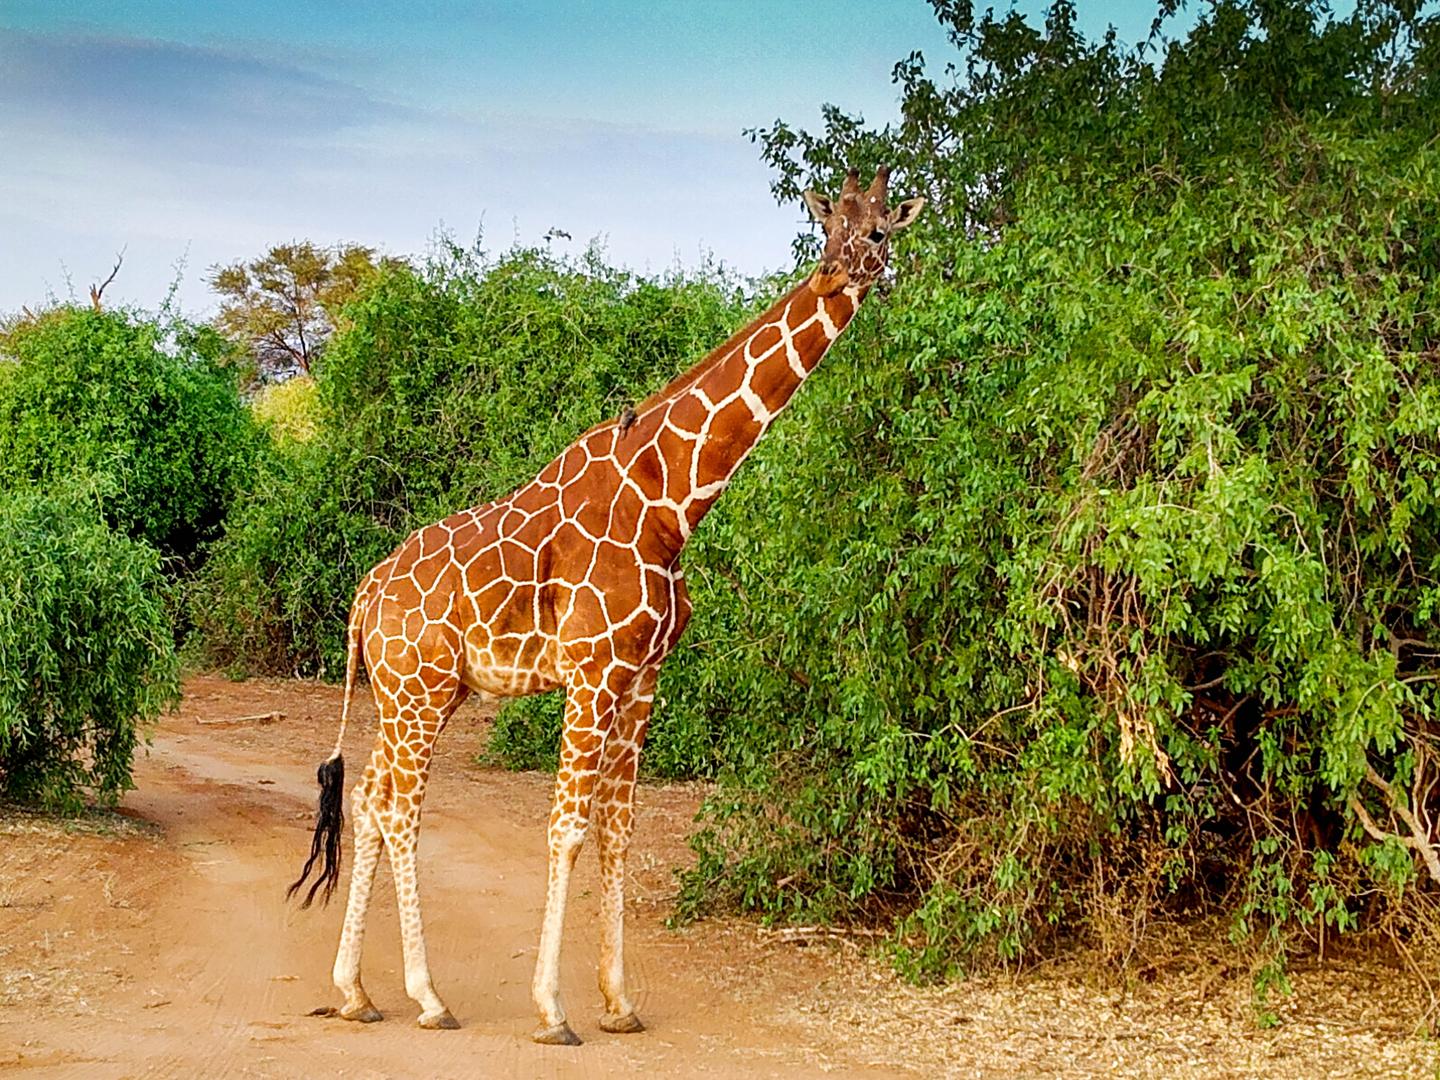 非洲 肯尼亚 植物学 - Pixabay上的免费照片 - Pixabay